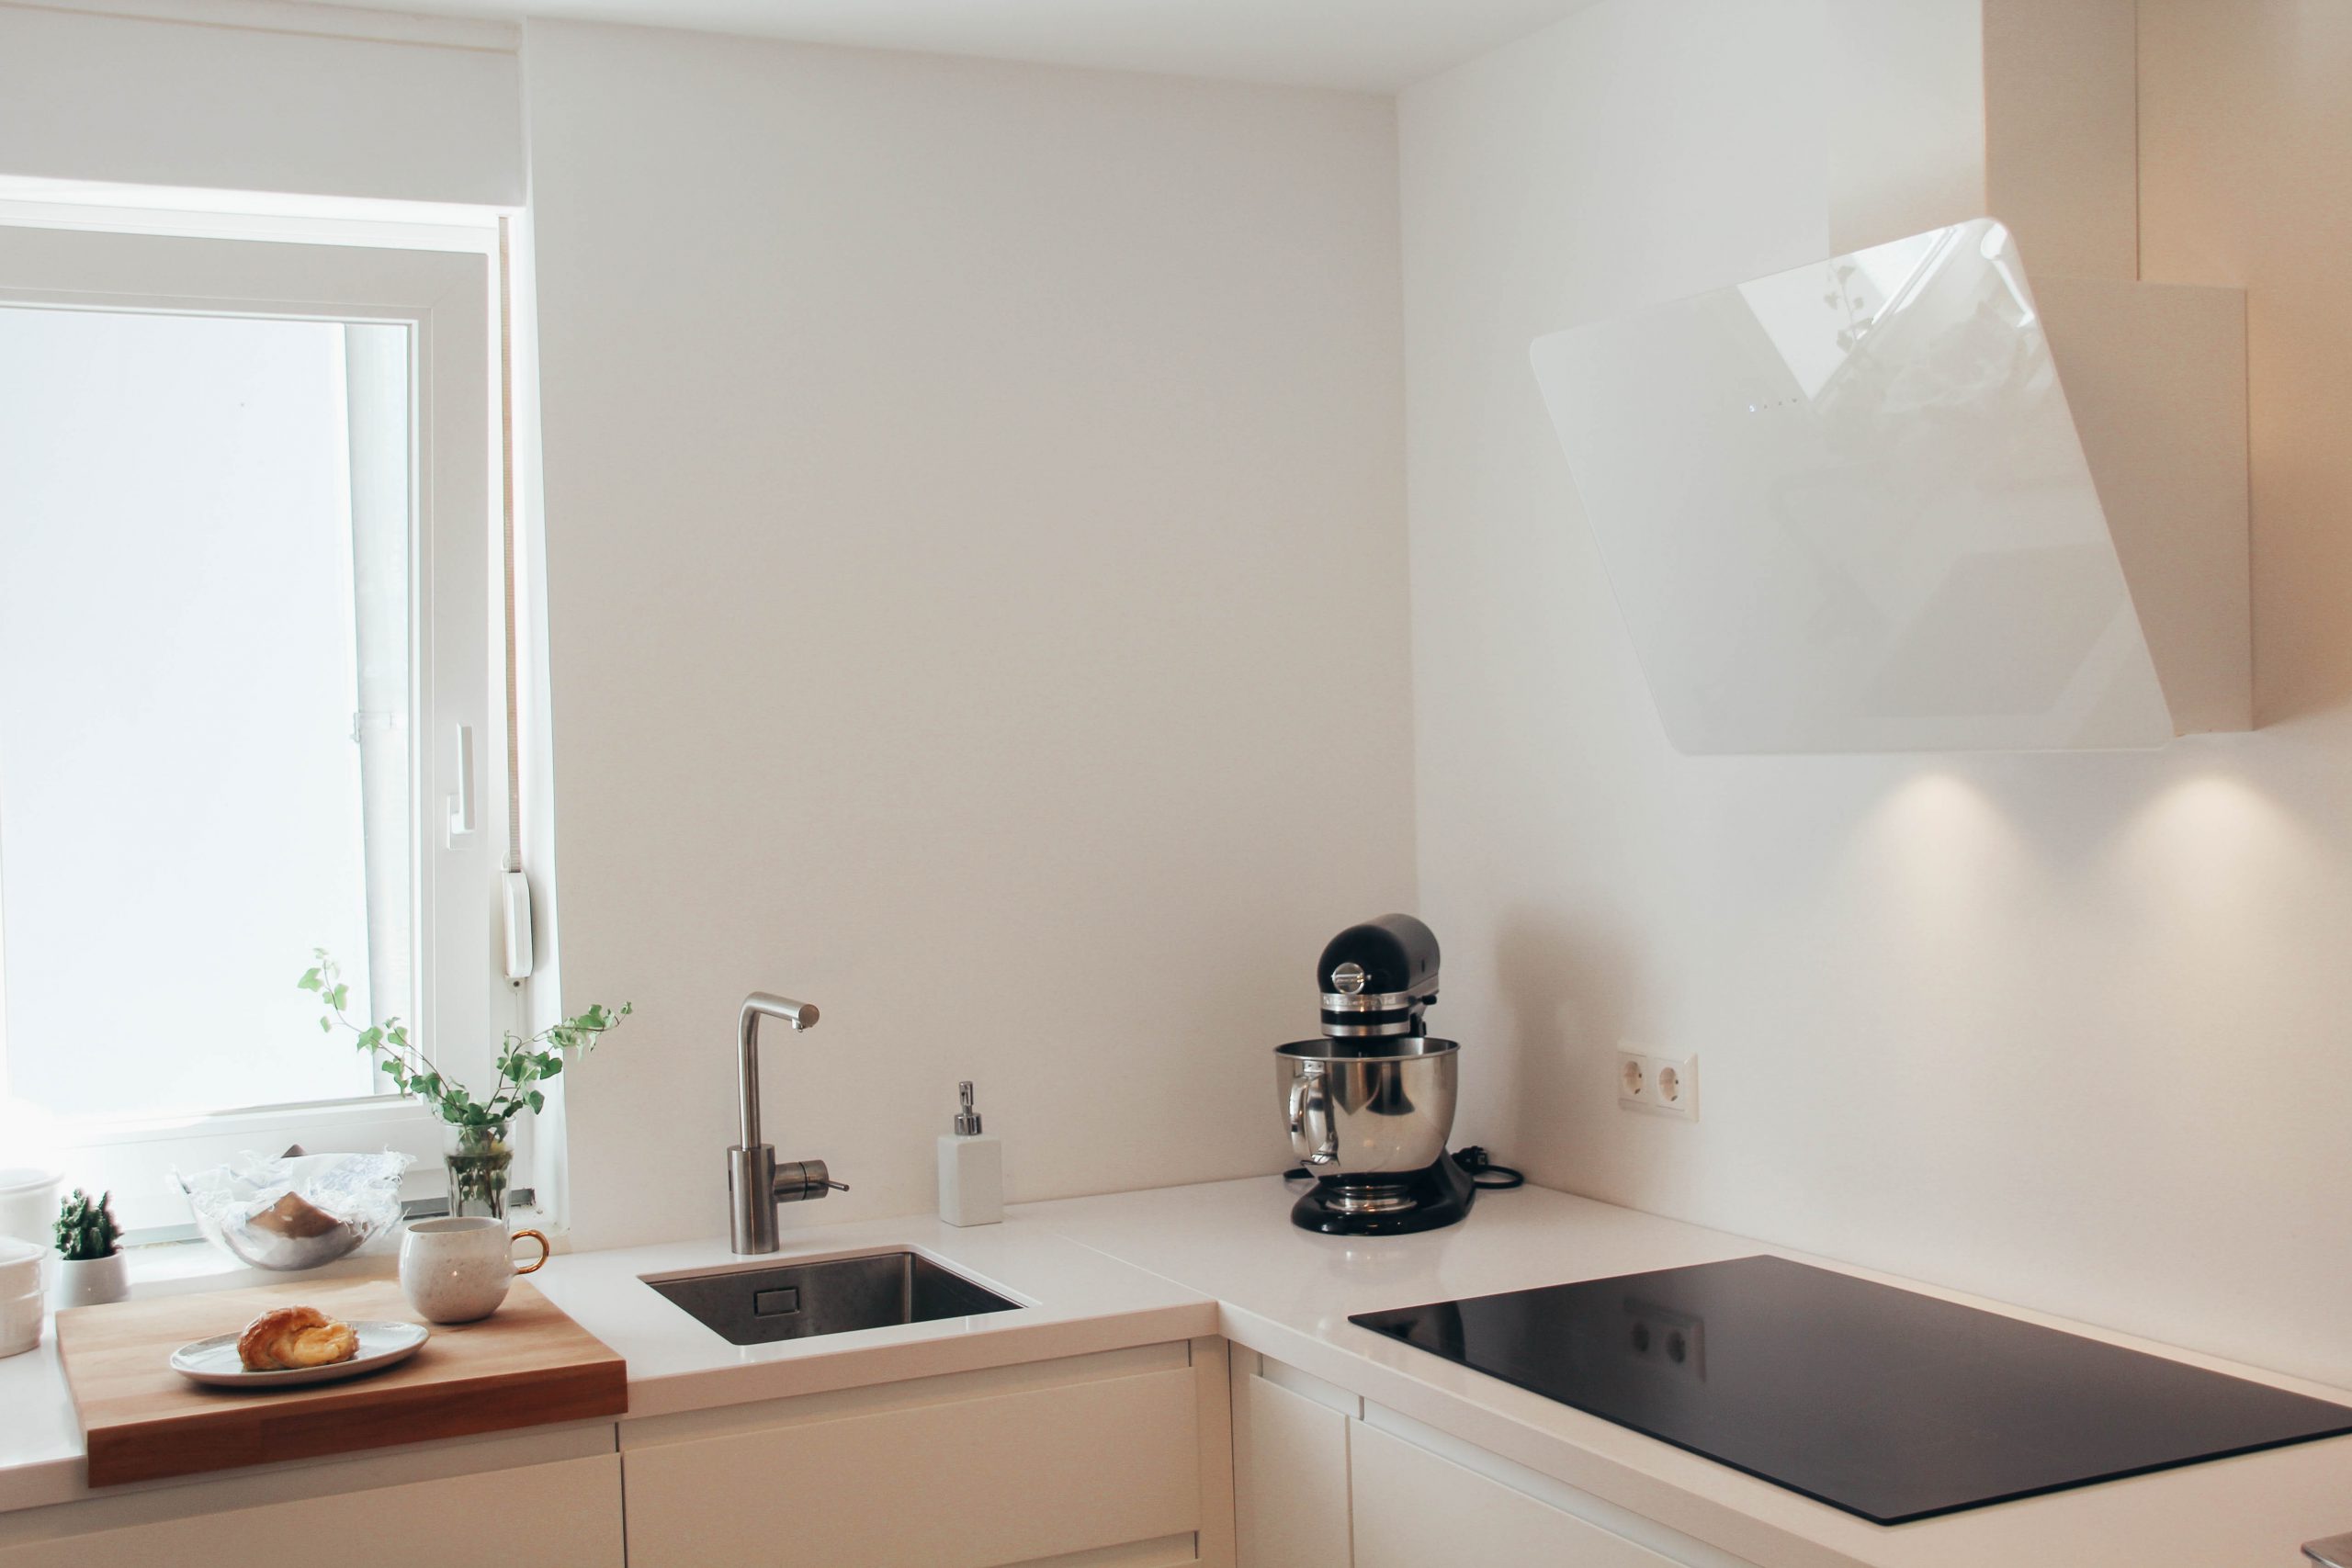 Unsere METOD-Küche von IKEA – Tipps zur Küchenplanung